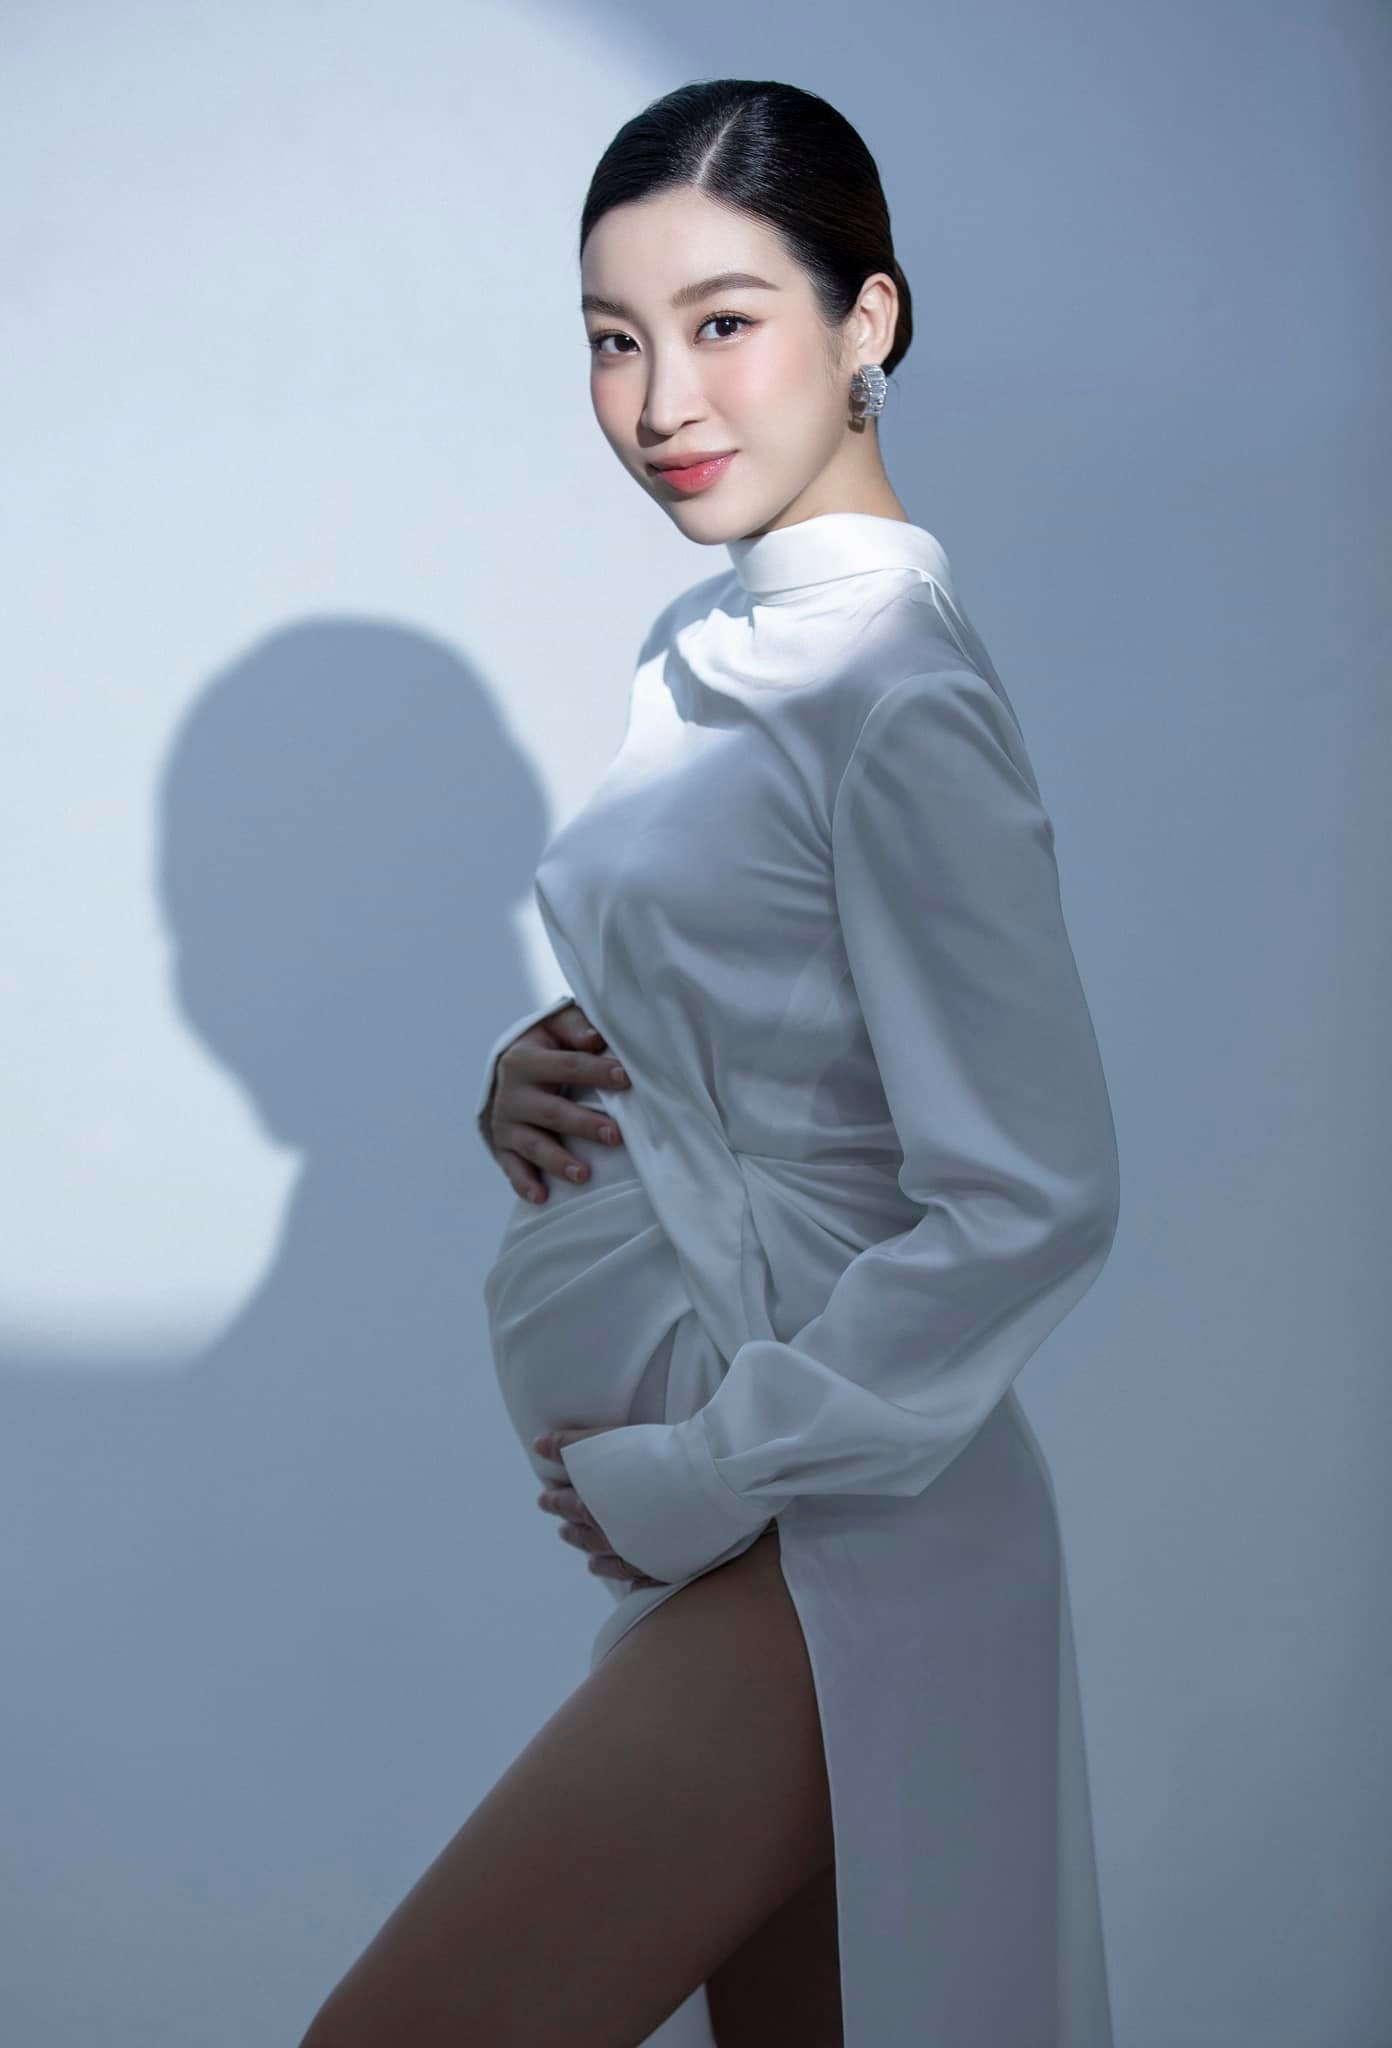 Hoa hậu Đỗ Mỹ Linh lần đầu đăng ảnh mang thai con đầu lòng nhân dịp 7 năm đăng quang - Ảnh 3.